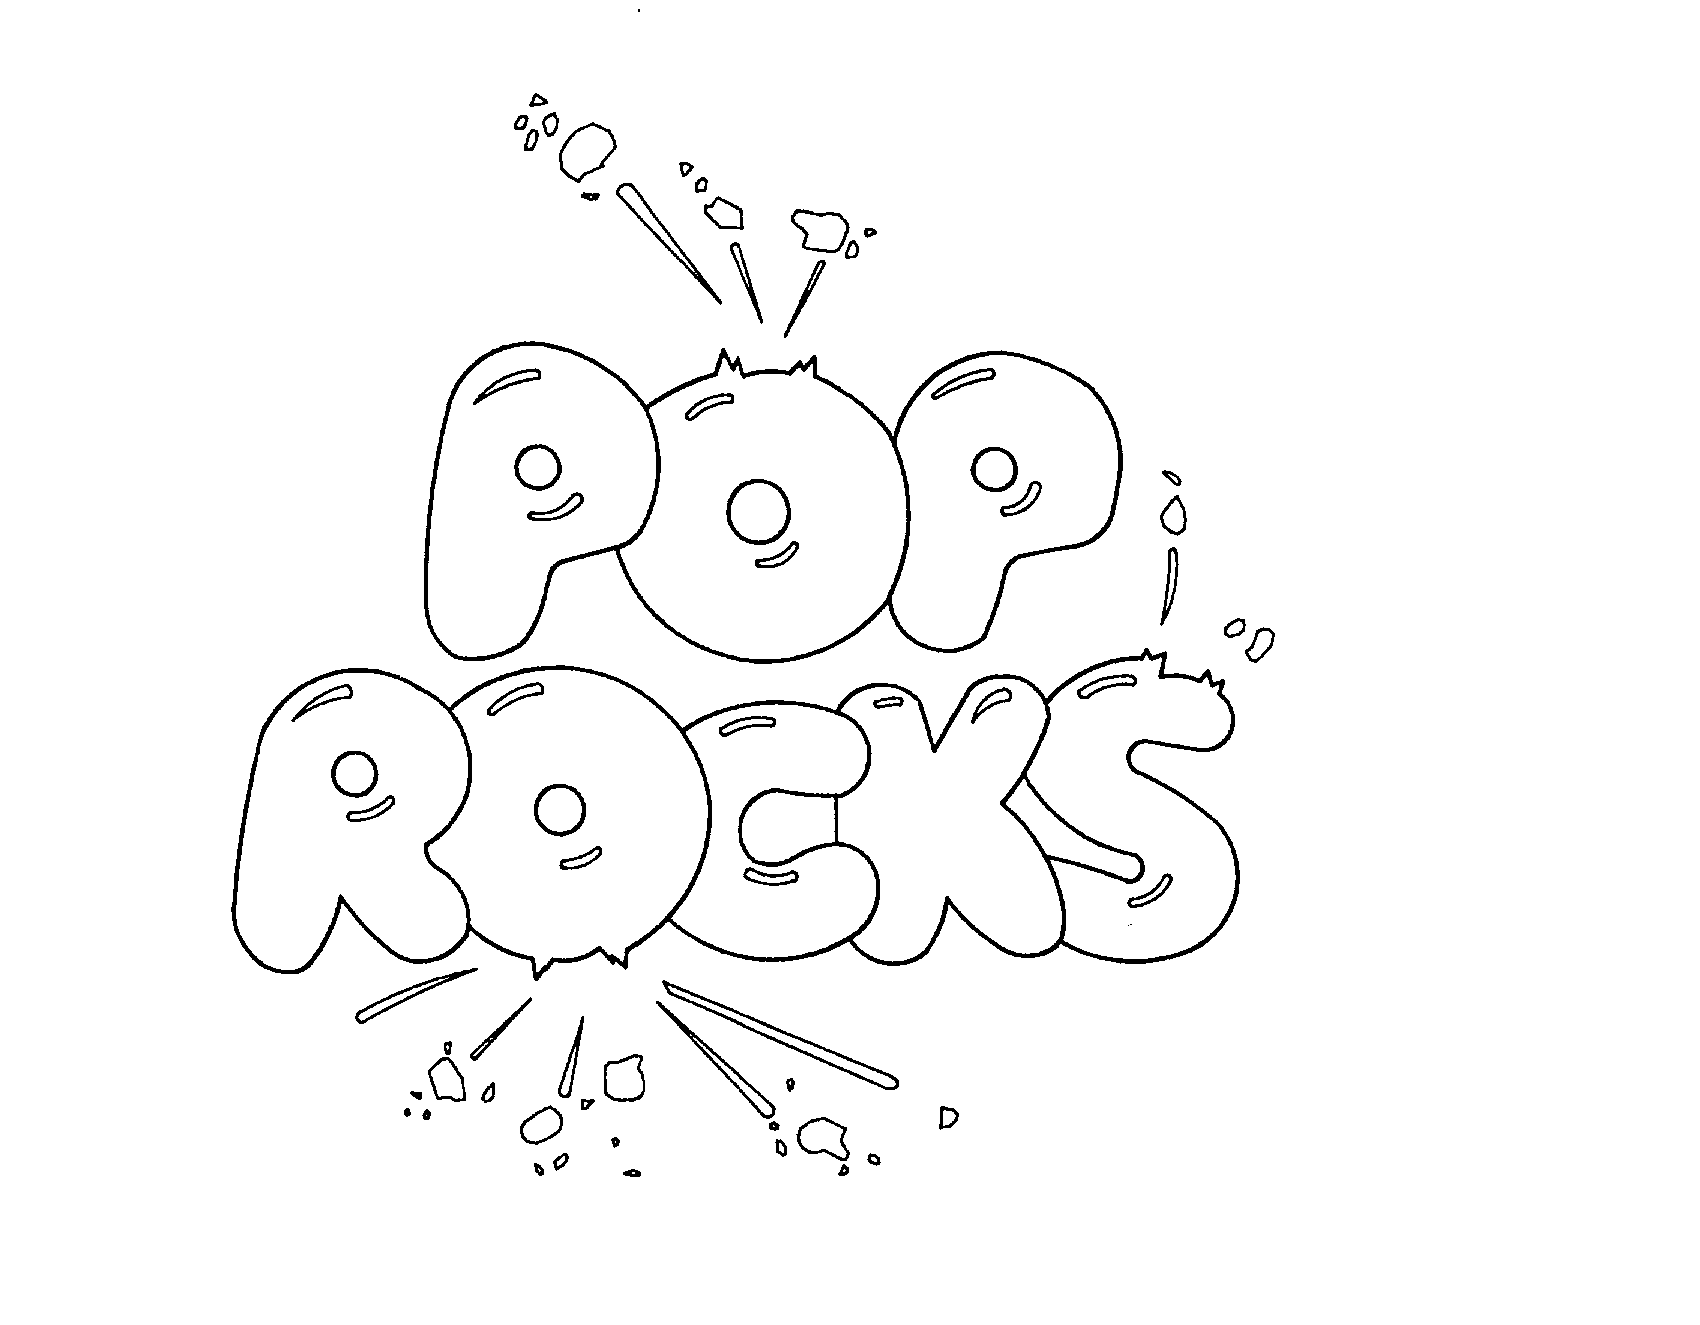  POP ROCKS